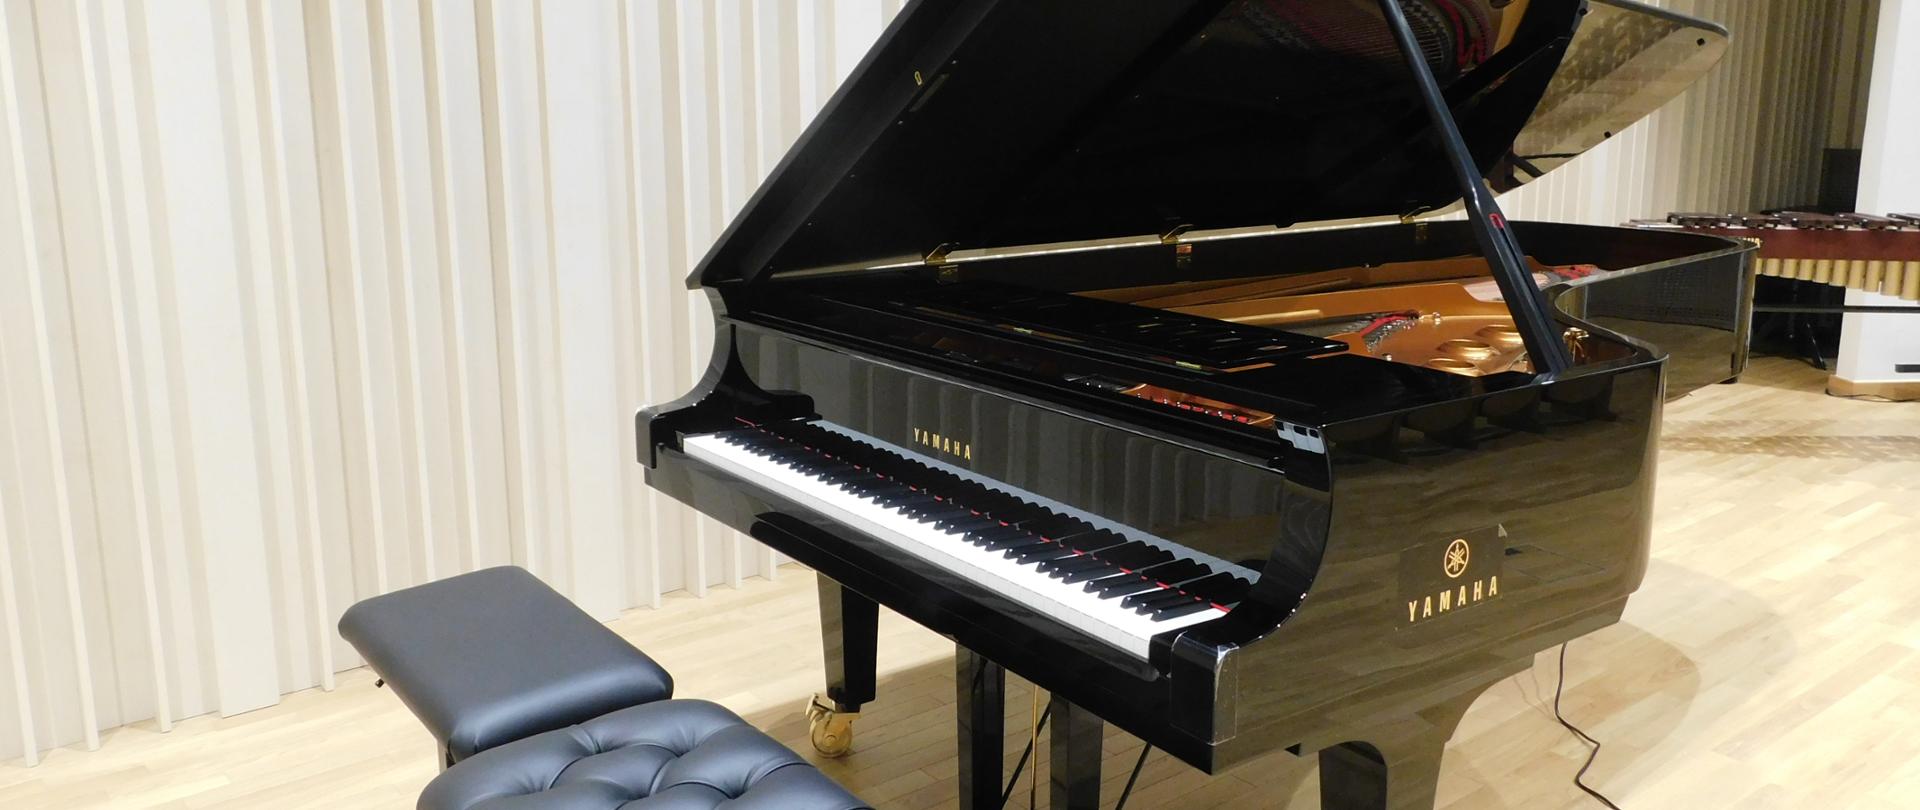 Na zdjęciu czarny fortepian z dwiema czarnymi ławami. Fortepian marki Yamaha. Fortepian ustawiony na drewnianej podłodze.